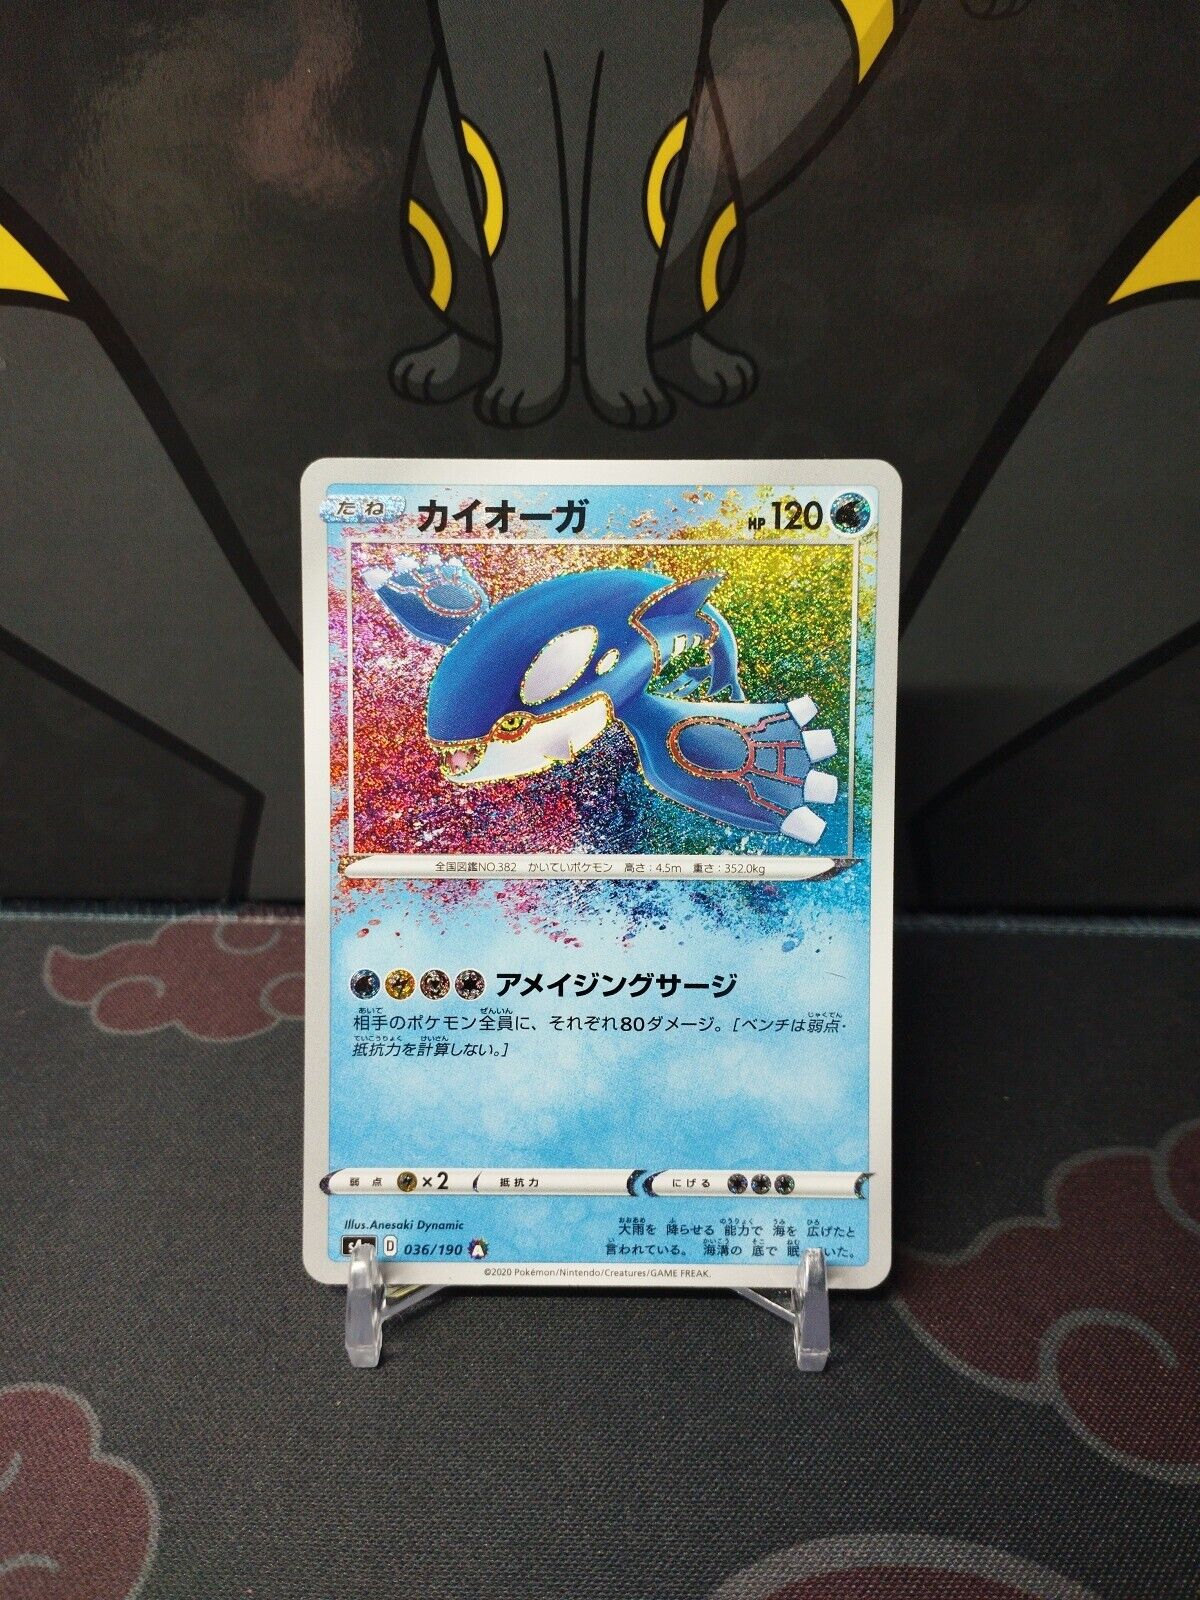 Pokemon Amazing Kyogre 036/190 Japanese Japanese Card S4a